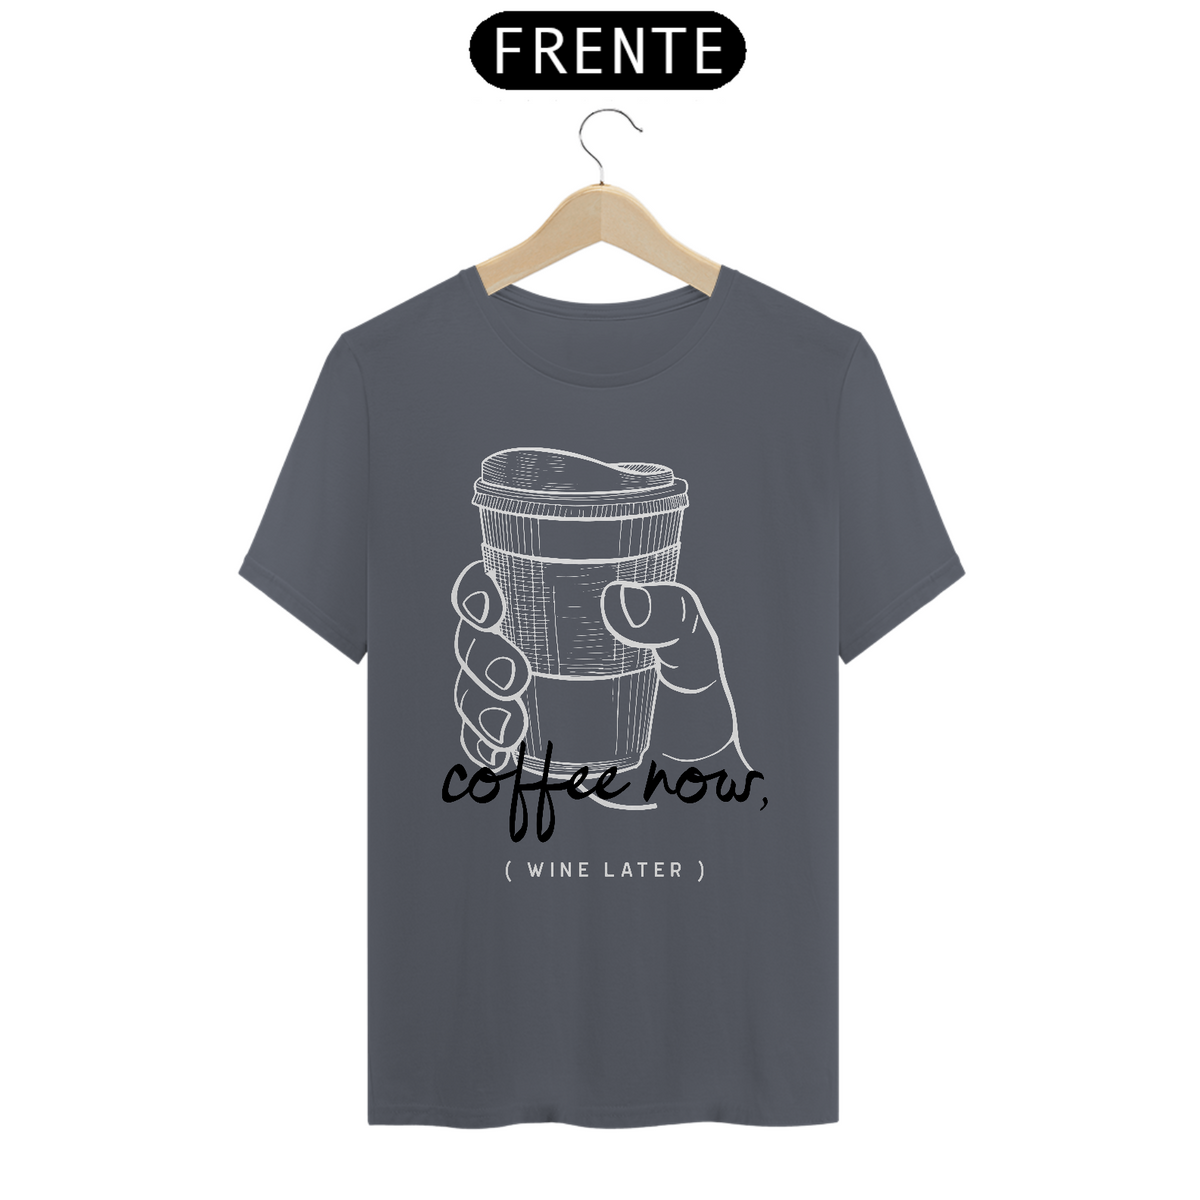 Nome do produto: Camiseta Unissex Coffe Now, Wine Later